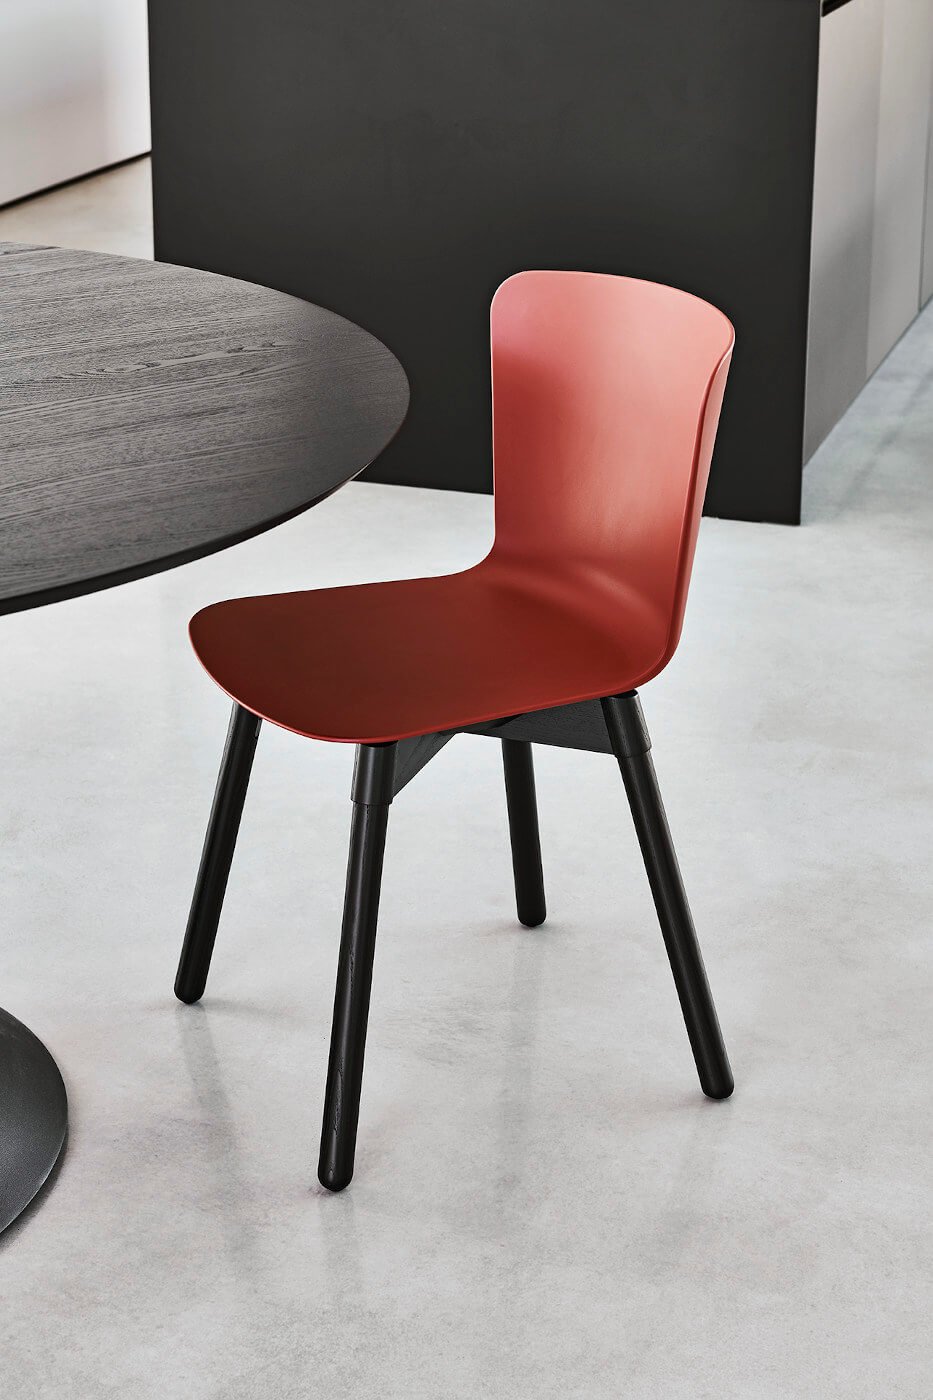 Calla S L_C PP Chair from Midj, designed by Fabrizio Batoni